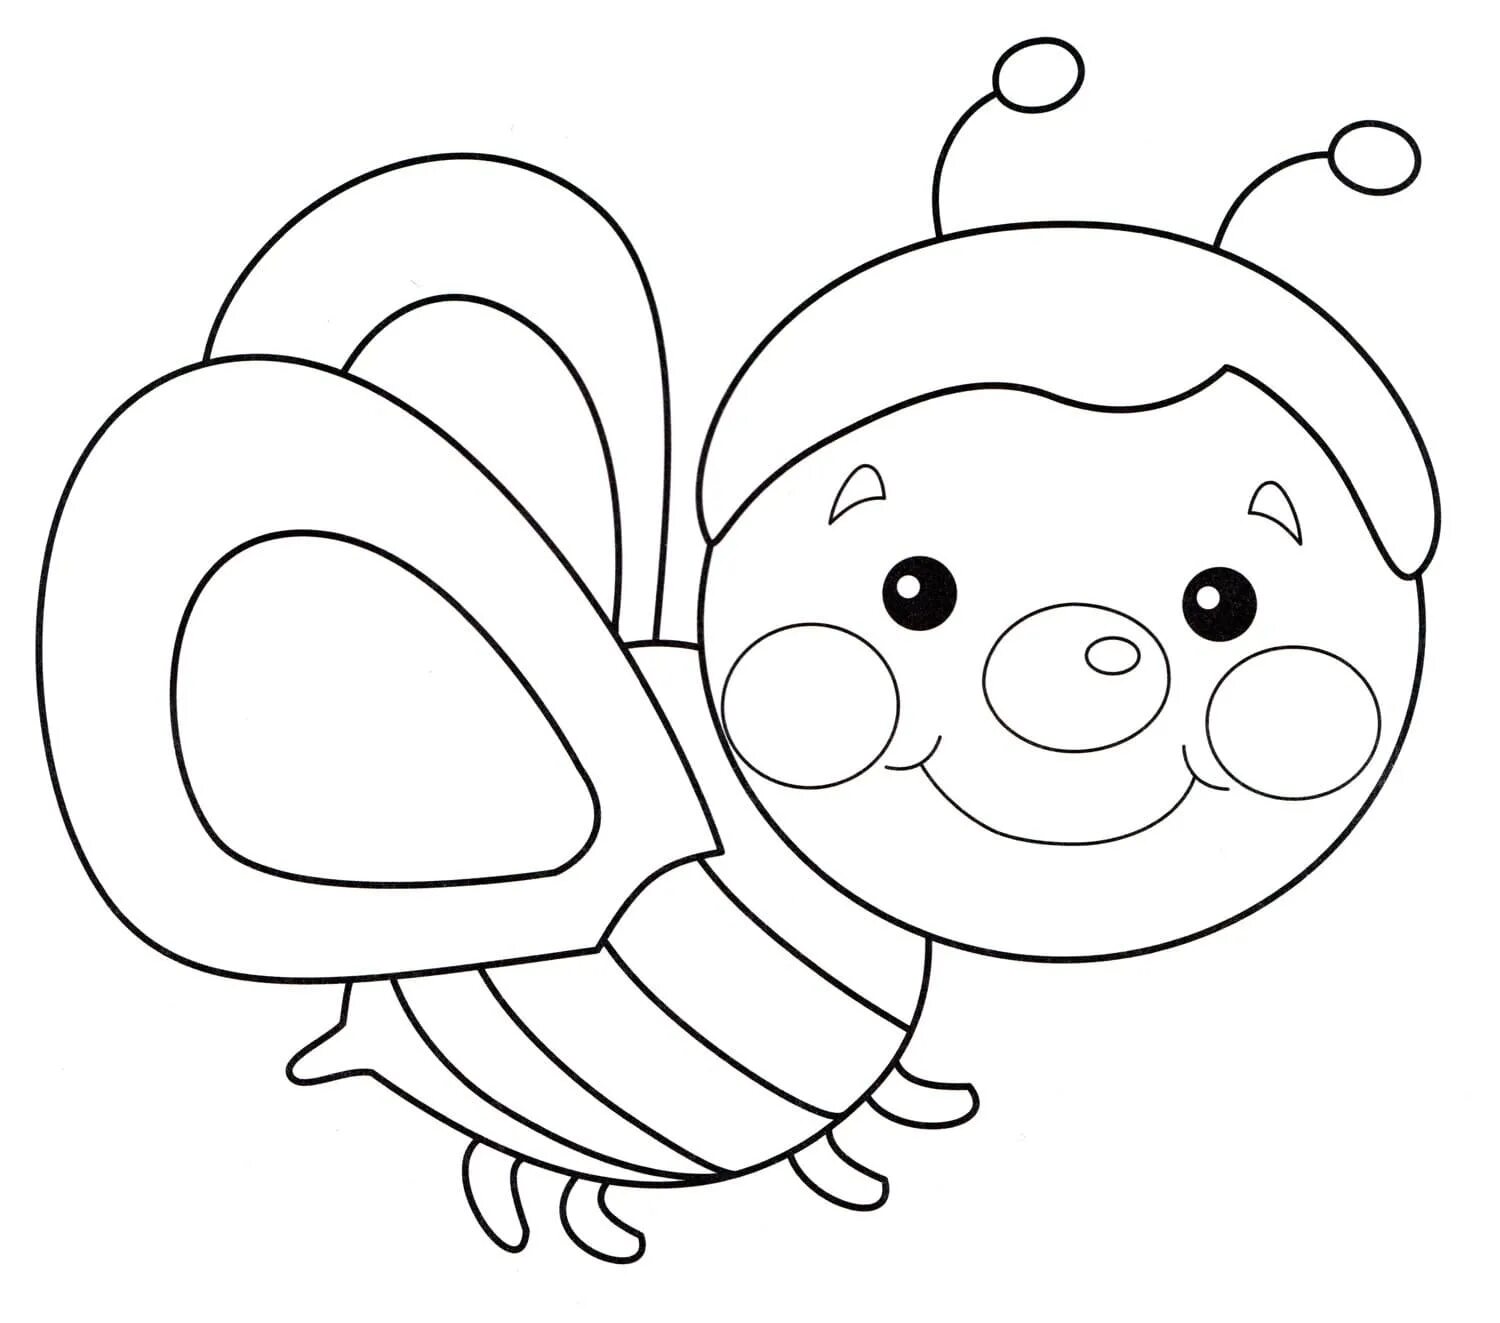 Раскраска пчёлка для детей. Пчела раскраска для детей. Пчелка раскраска для малышей. Раскраска пчела для детей 3-4 лет. Раскраска пчела для детей